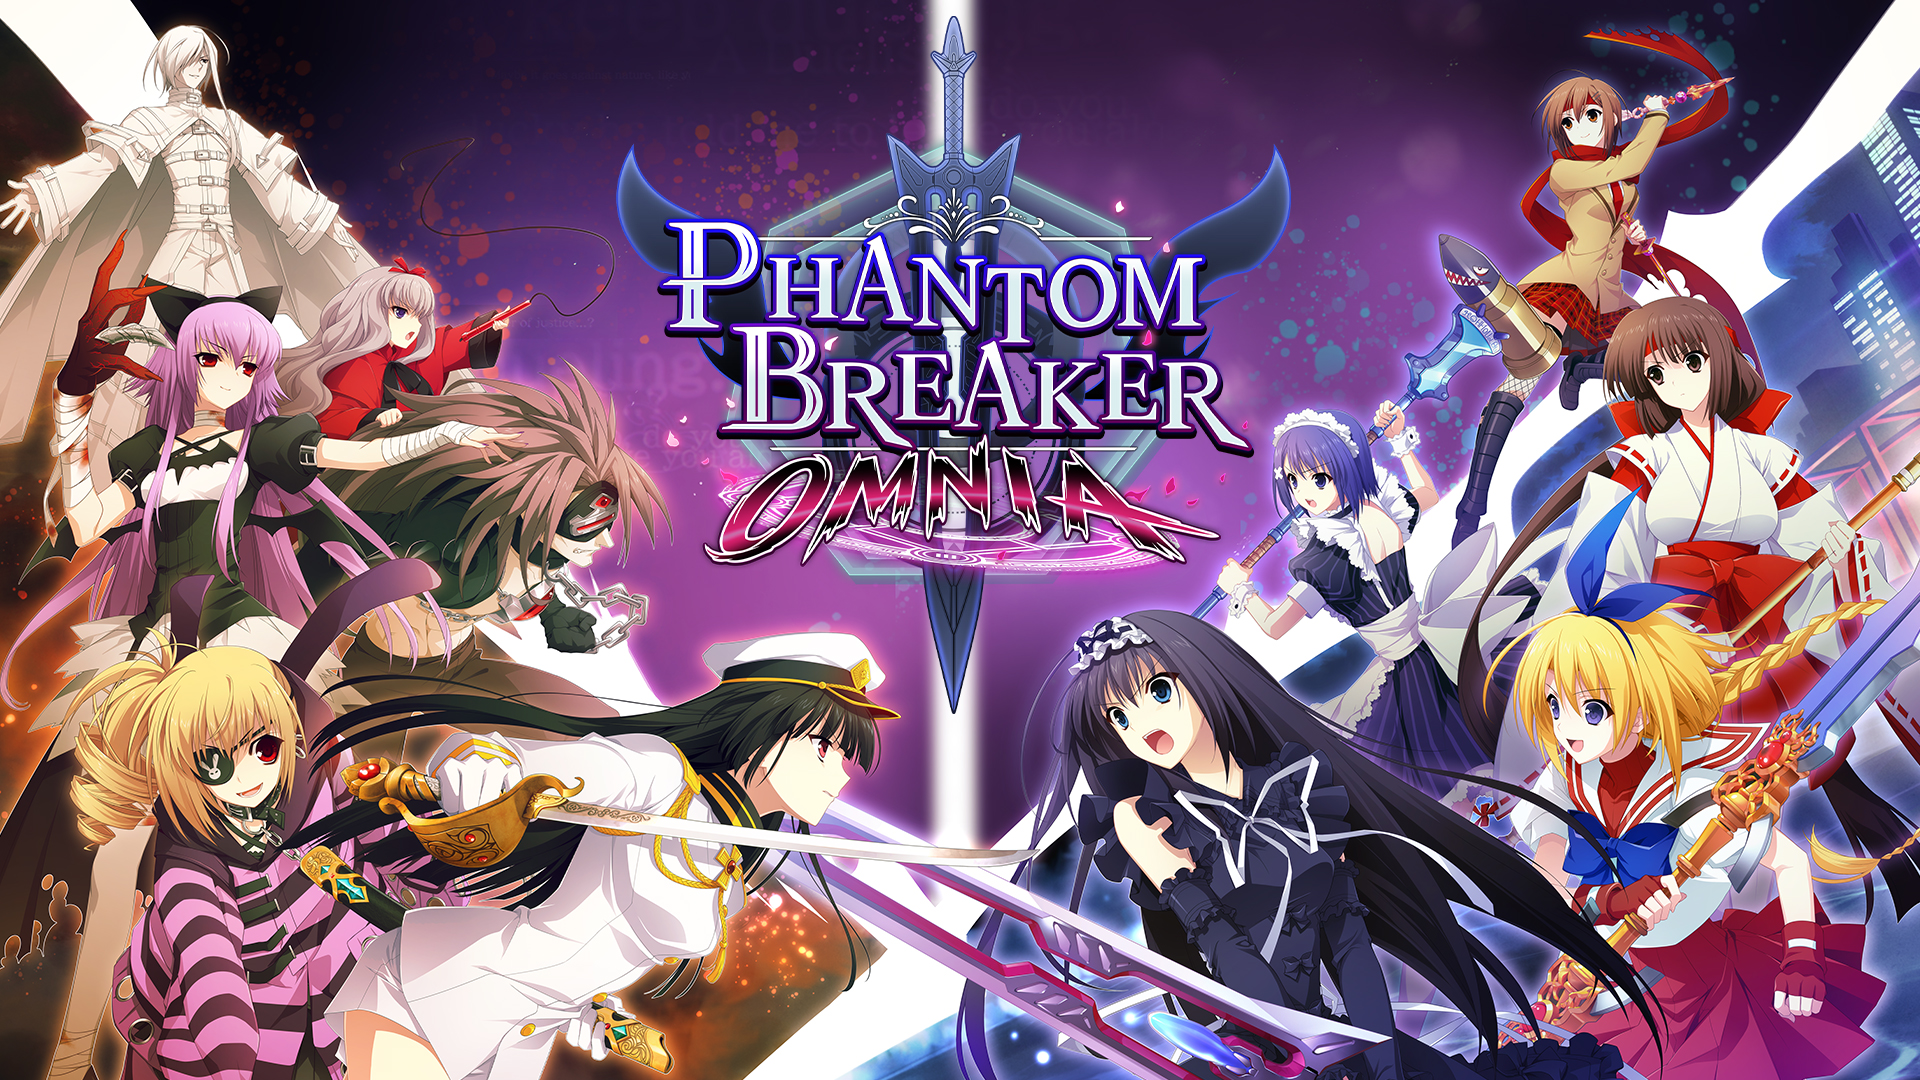 Phantom Breaker: Omnia will release March 15, 2022